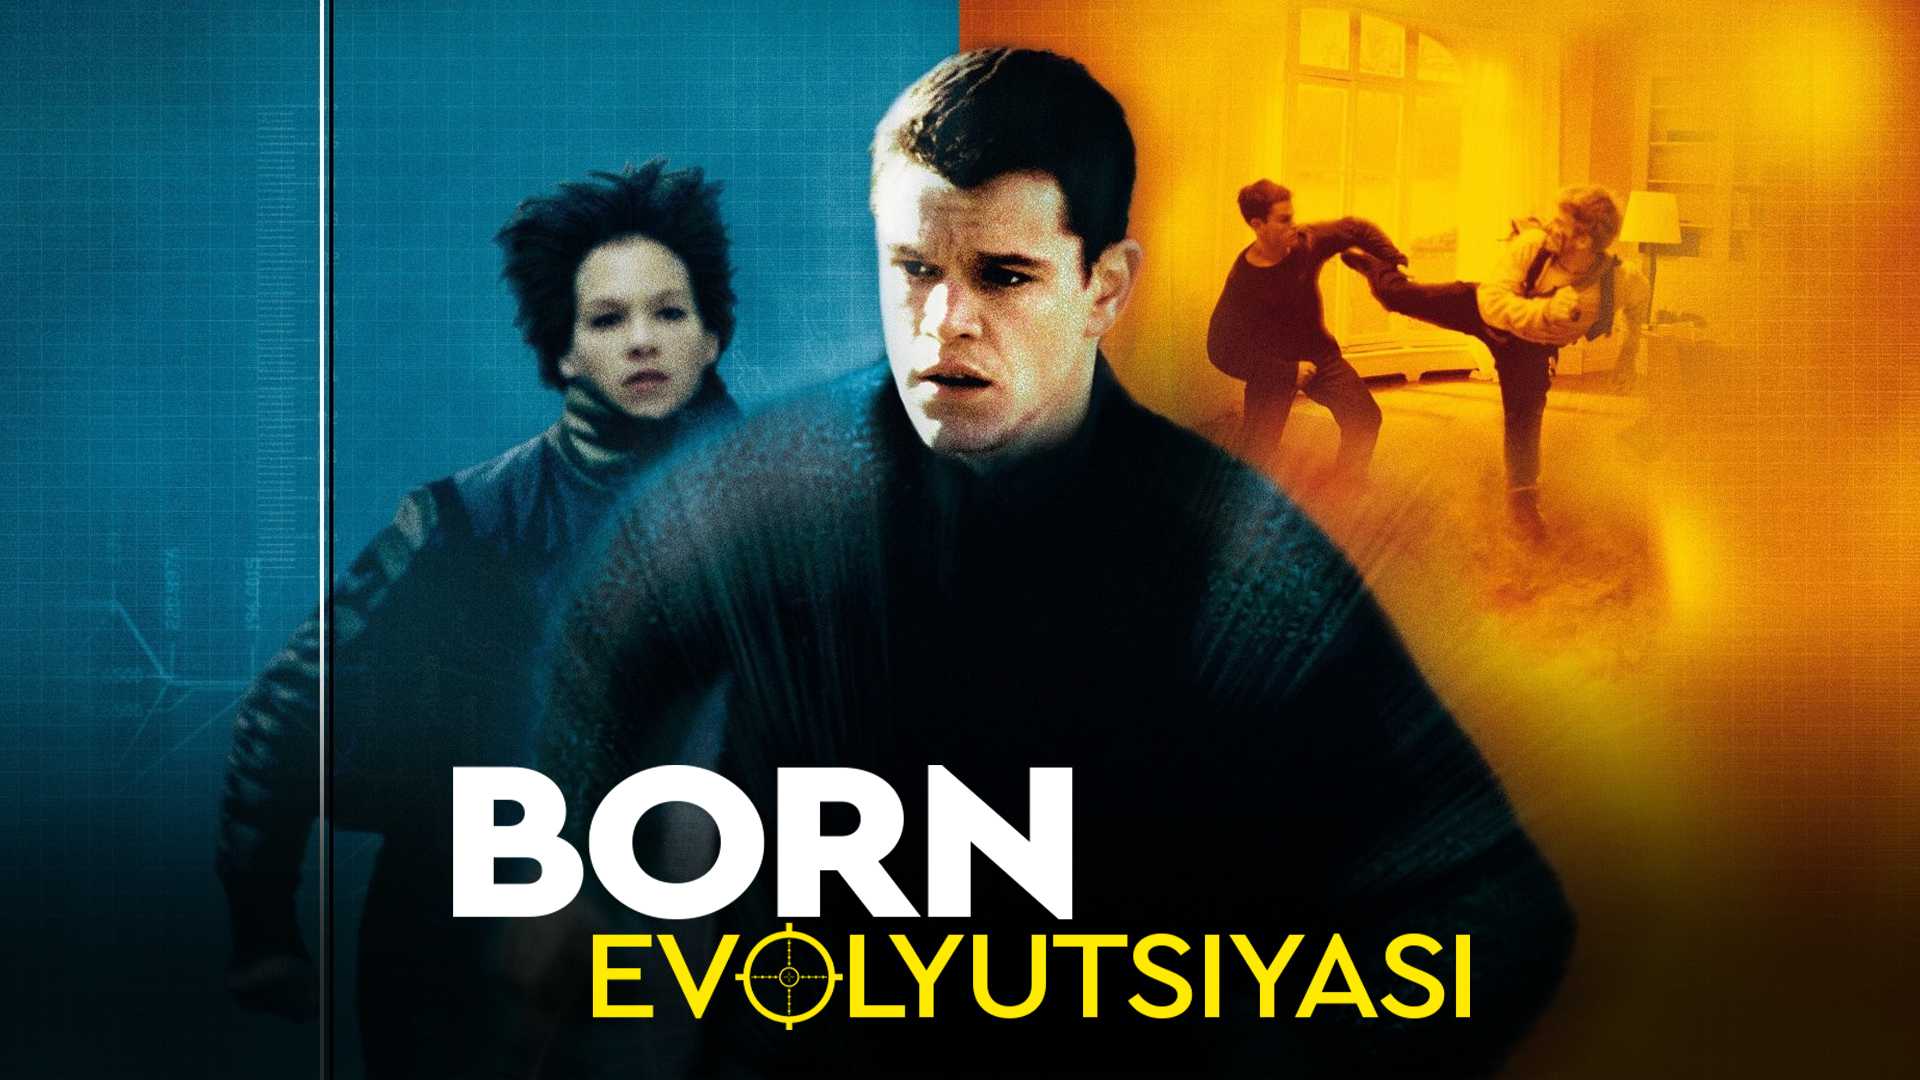 Born evolyutsiyasi